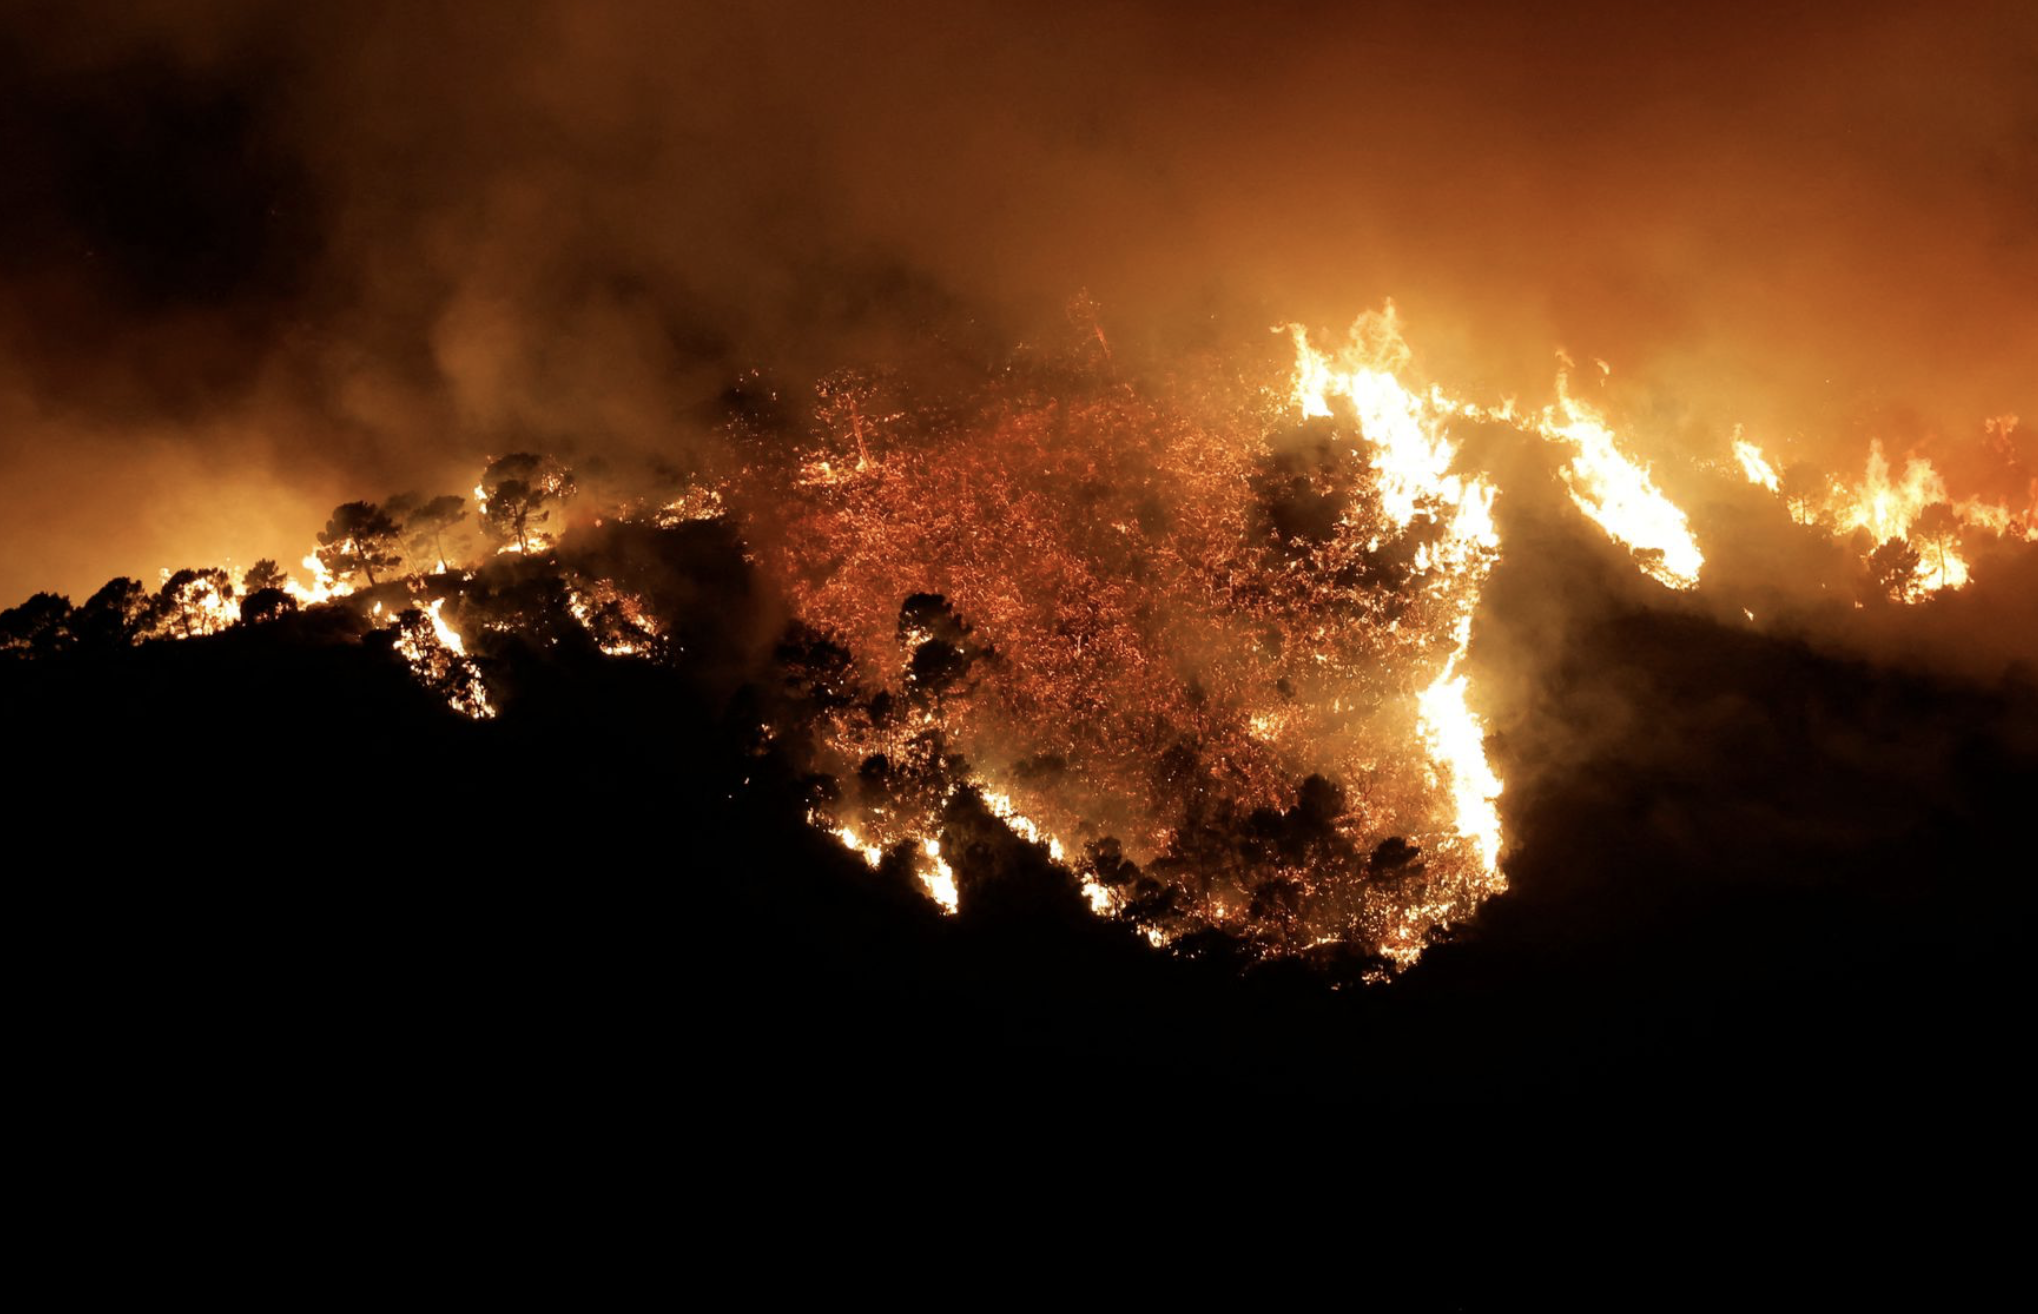 Лесные пожары в Испании. Світ у вогні. Пожар в Испании сегодня. Огнеборец Юг. Сильный жар ночью